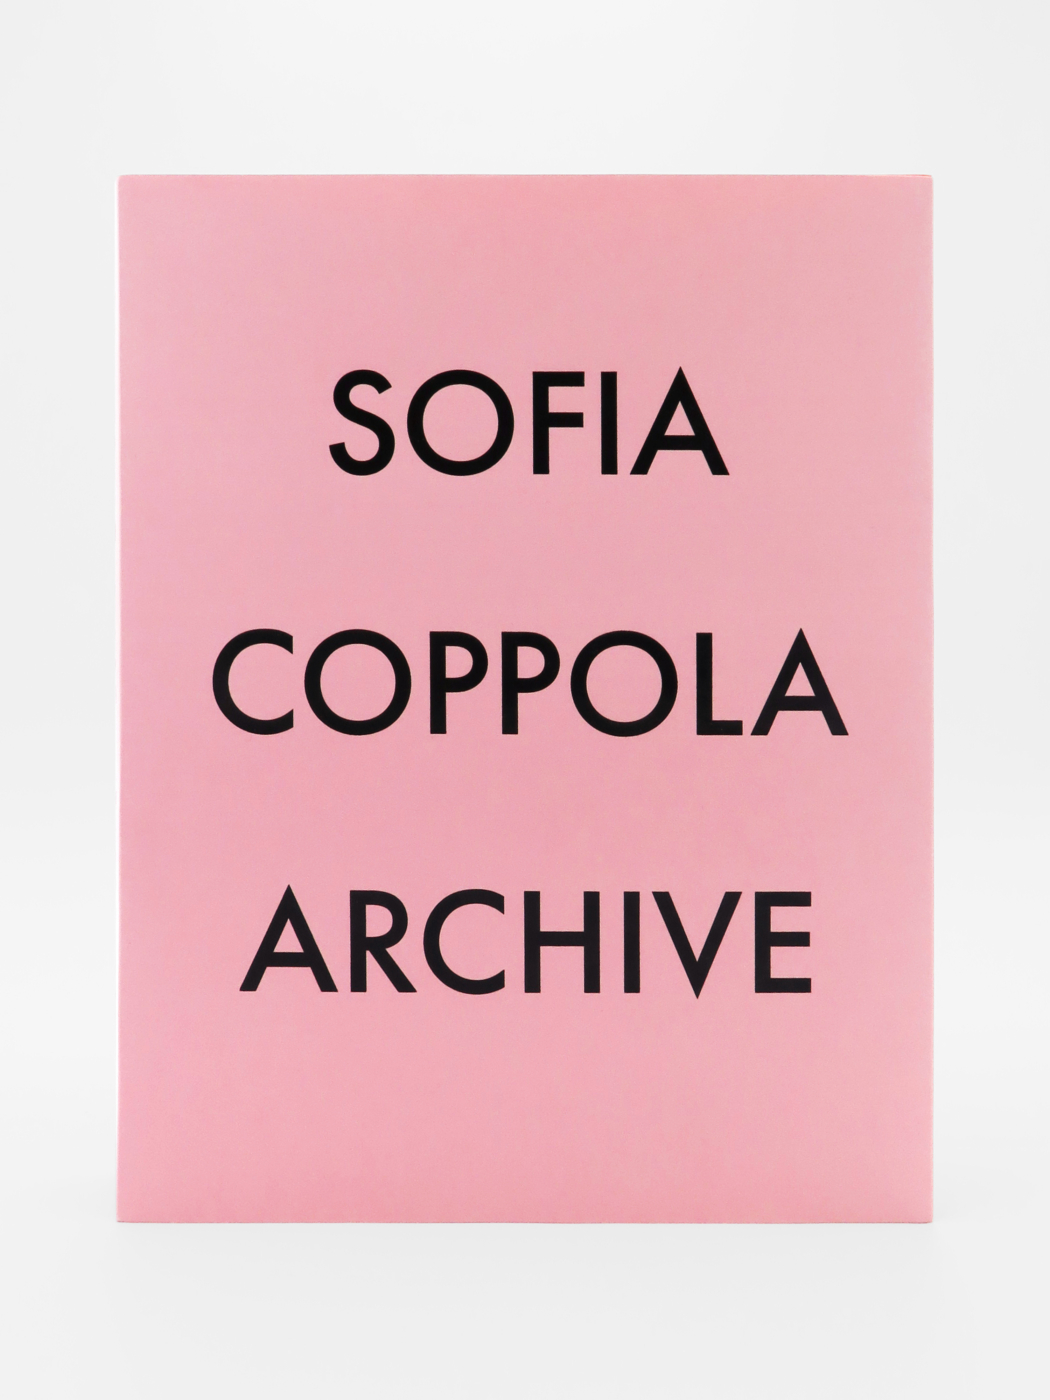 Sofia Coppola, Archive